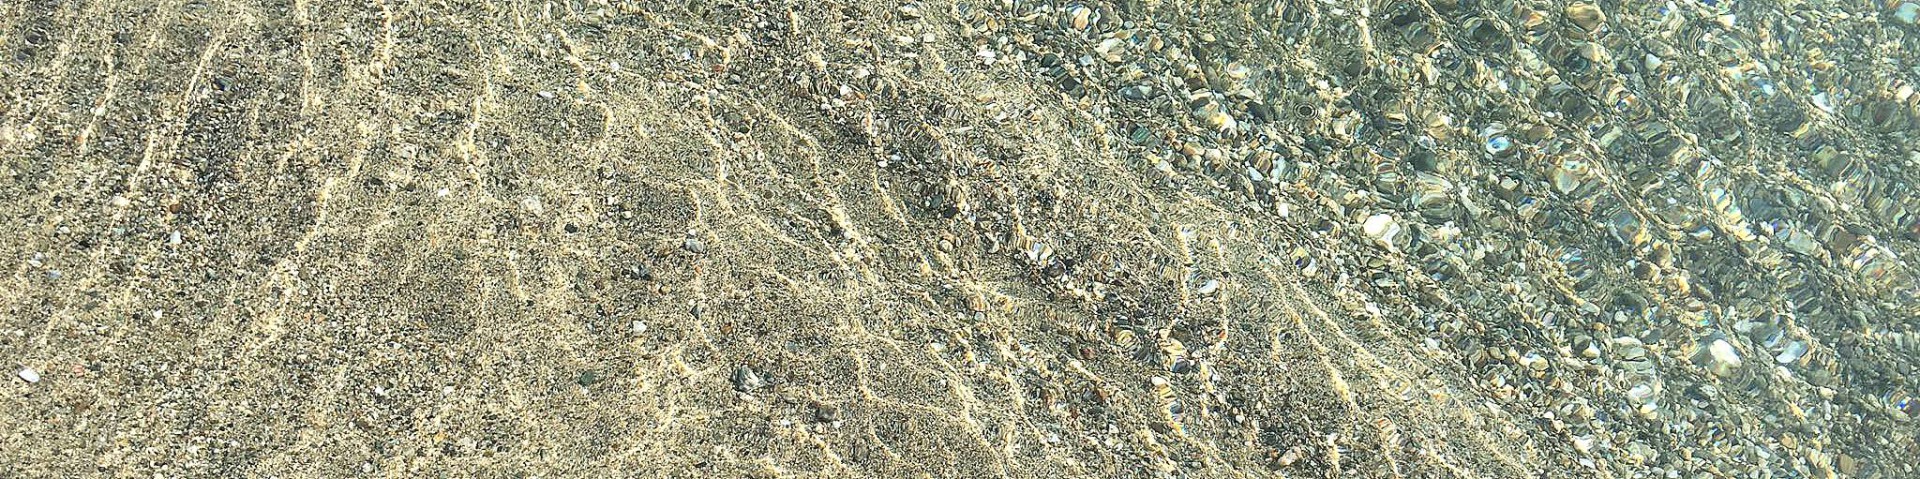 Marina di Sibari, vstup do moře je pozvolný, s pískem a drobnými kamínky